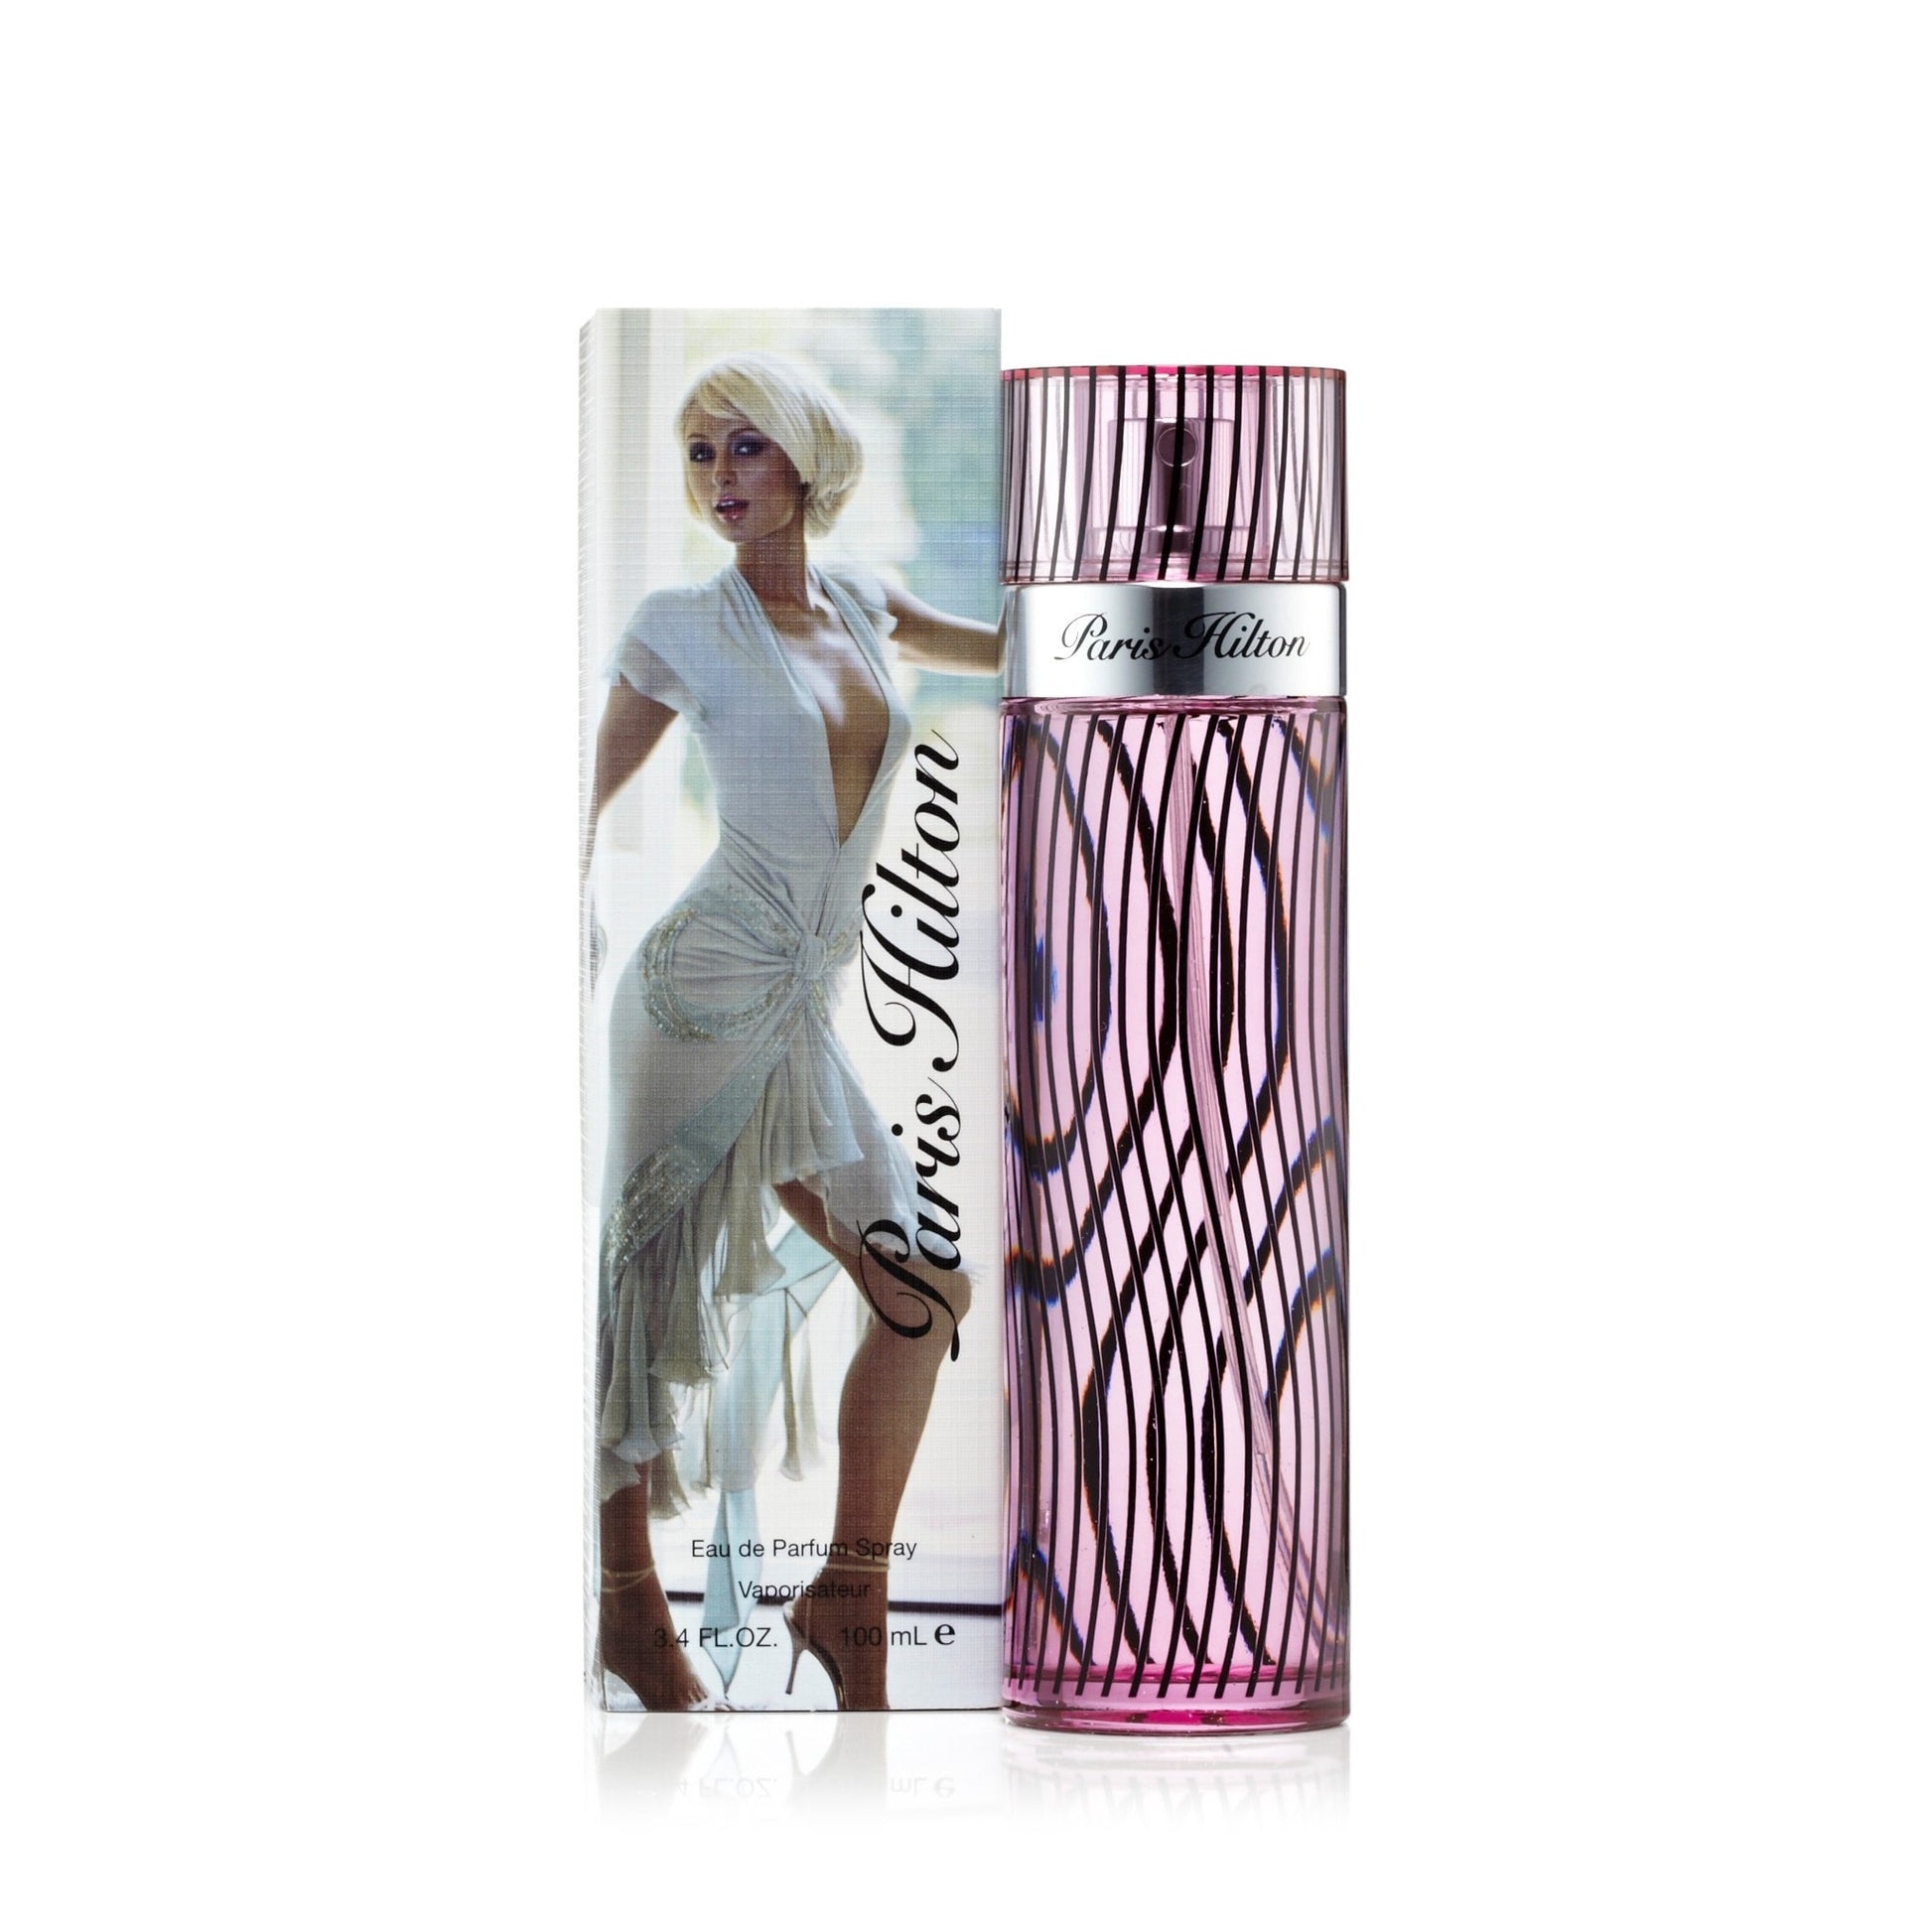 Paris Hilton Paris Hilton Eau de Parfum Womens Spray 3.4 oz. Click to open in modal